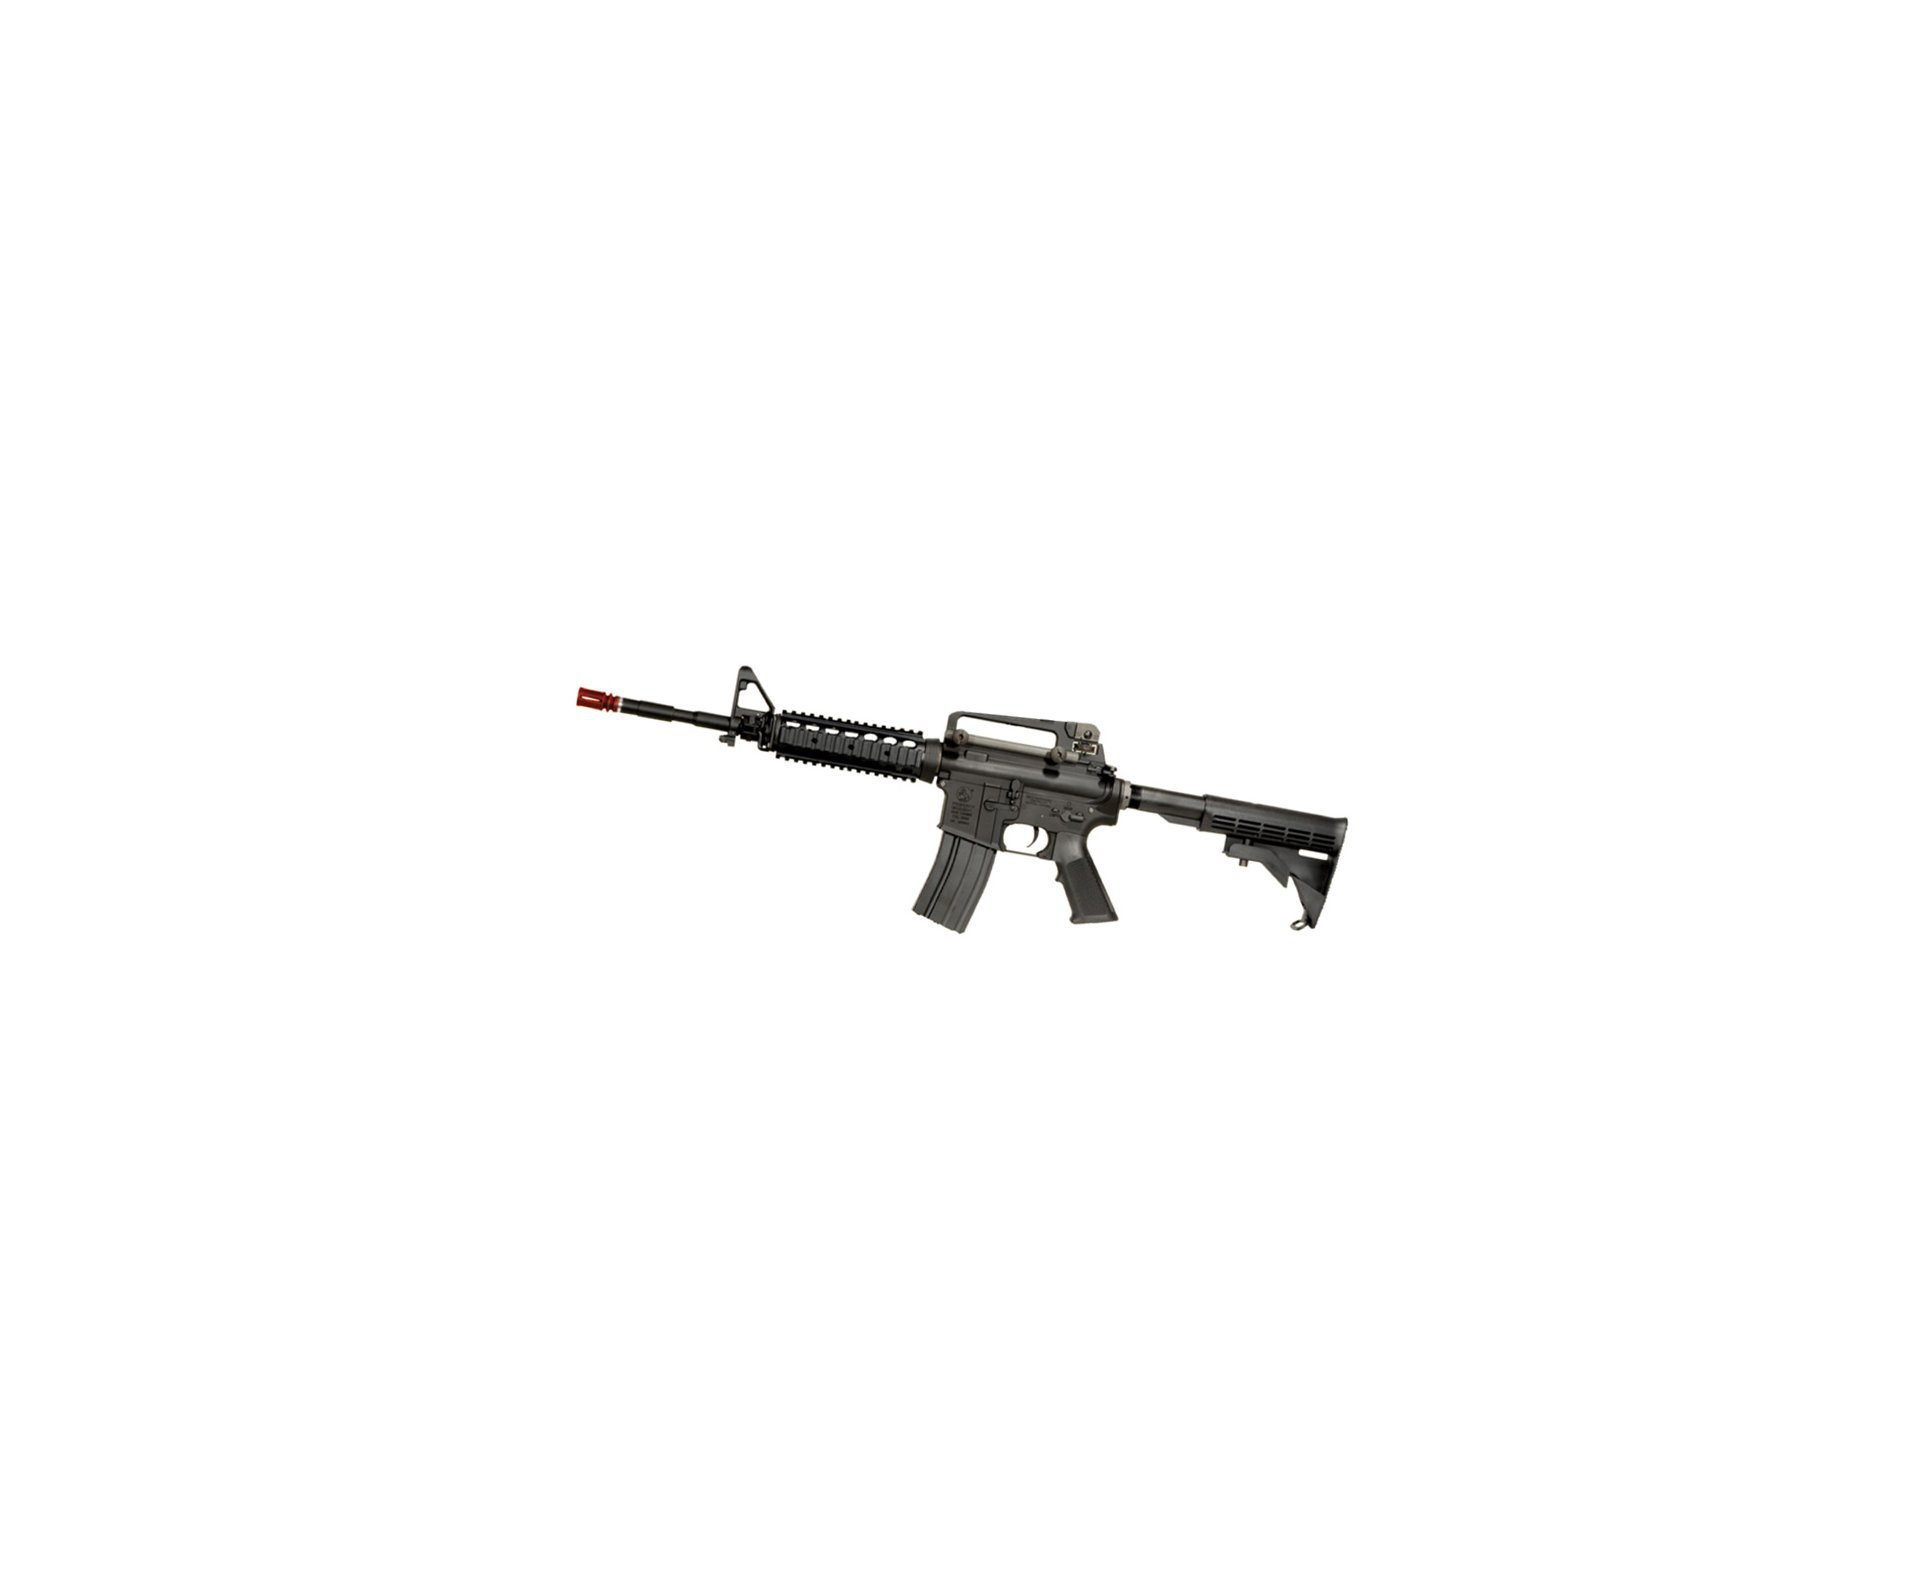 Rifle De Airsoft Colt M4a1ris Cal 6,0 Mm - King Arms + Farda Acu Digital Urban Swiss+arms - Tamanho Gg